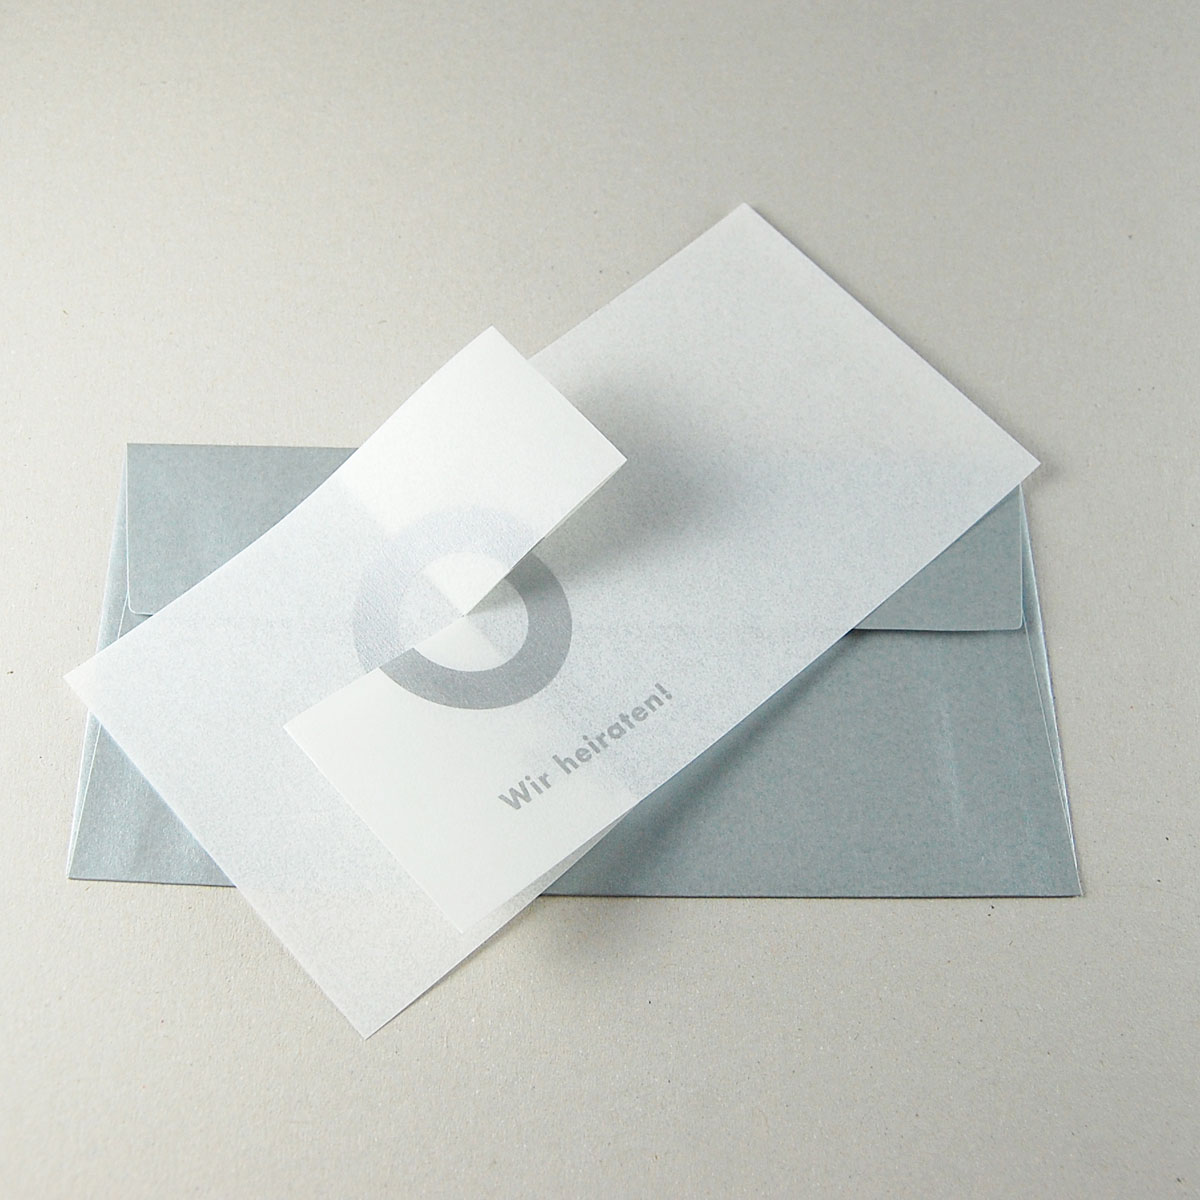 silberne Design-Hochzeitskarten: Wir heiraten!